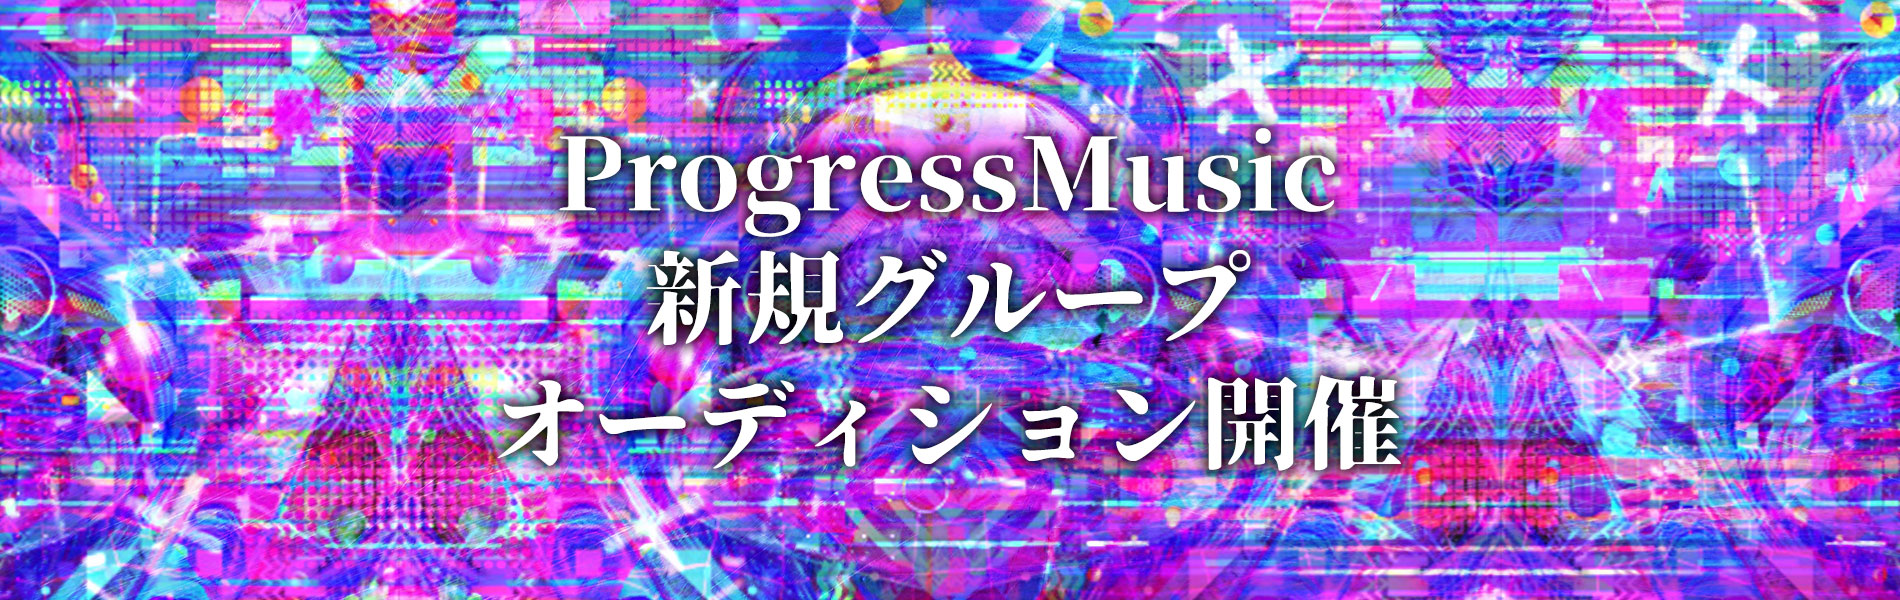 ProgressMusic新規グループオーディション開催